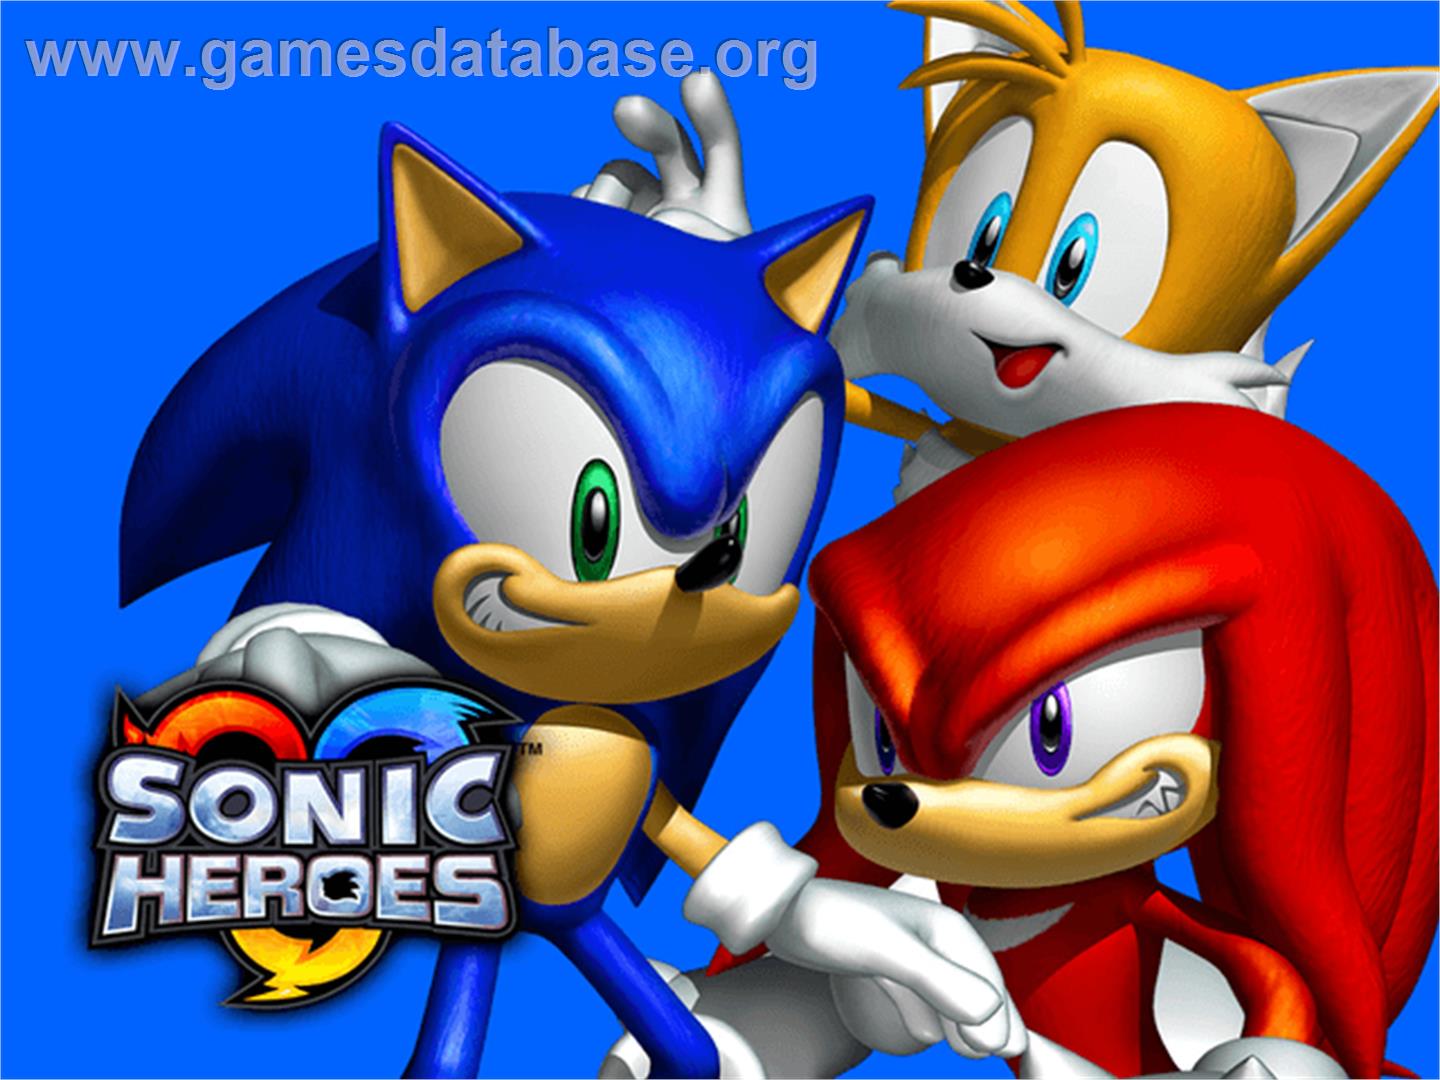 Sonic Heroes - Microsoft Xbox - Artwork - Title Screen